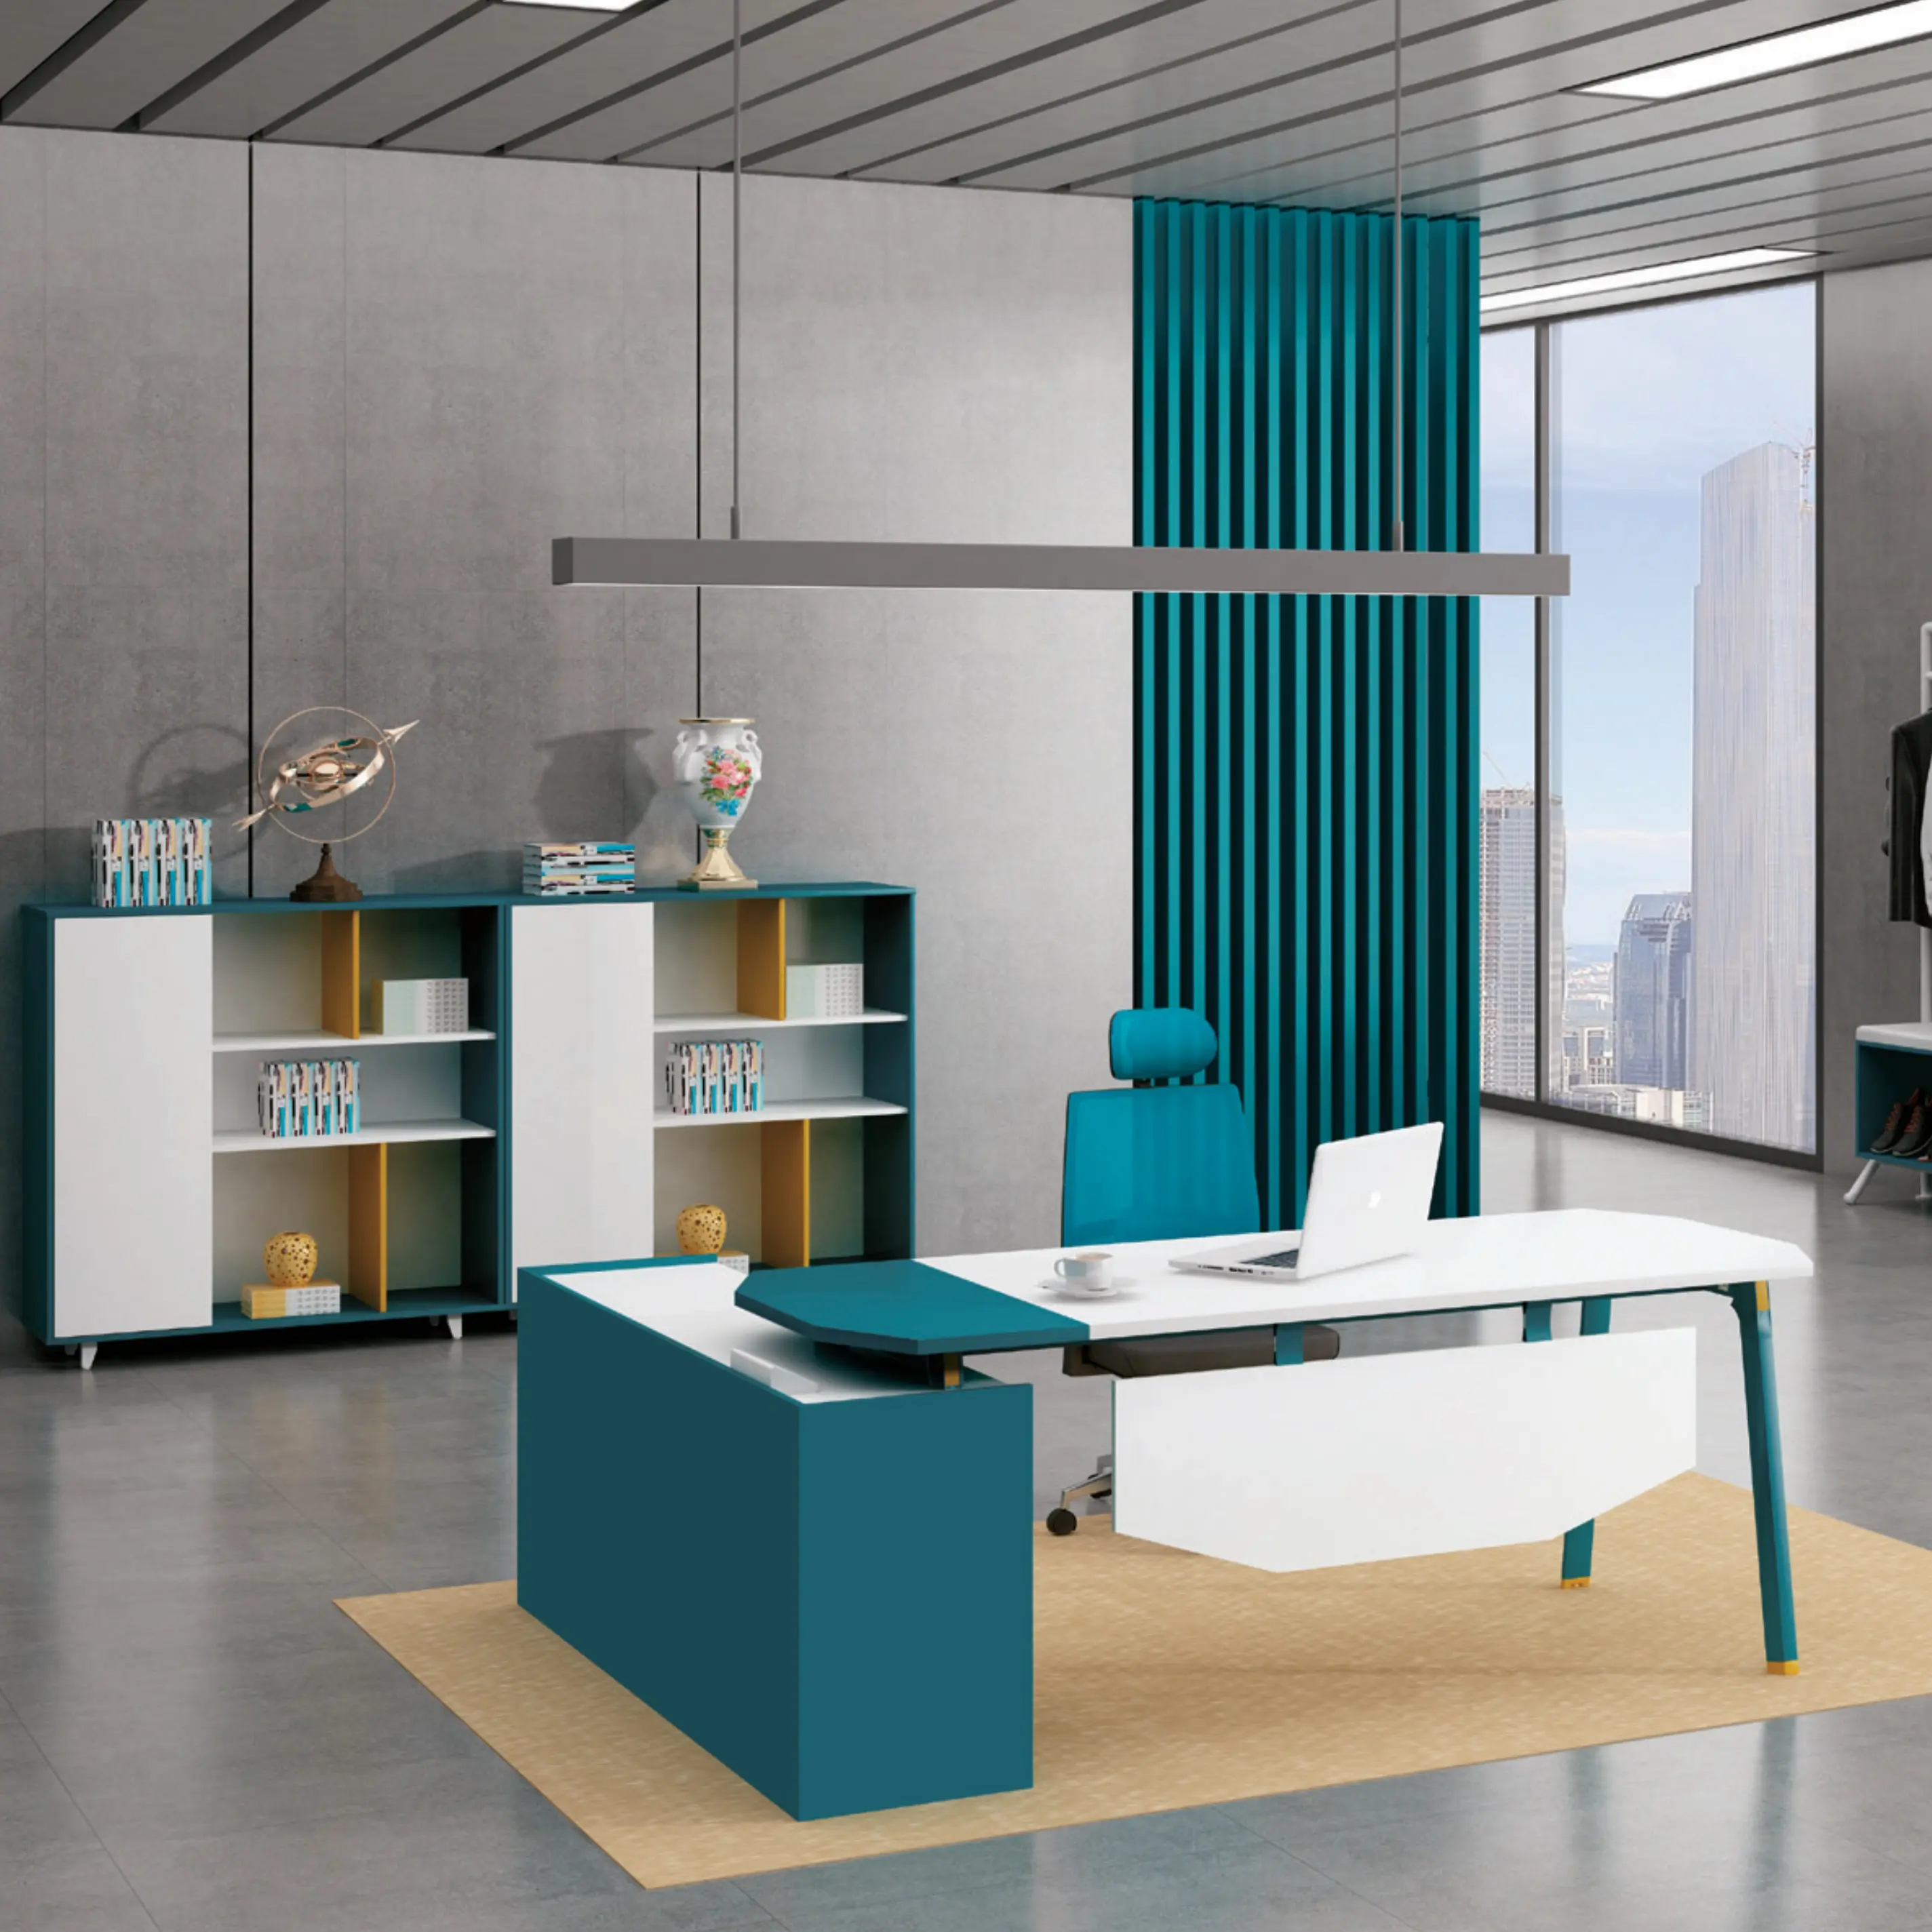 Furnitur Kantor Desain Modern Terbaru 2021 Furnitur Kantor Kursi Sofa Meja Kantor